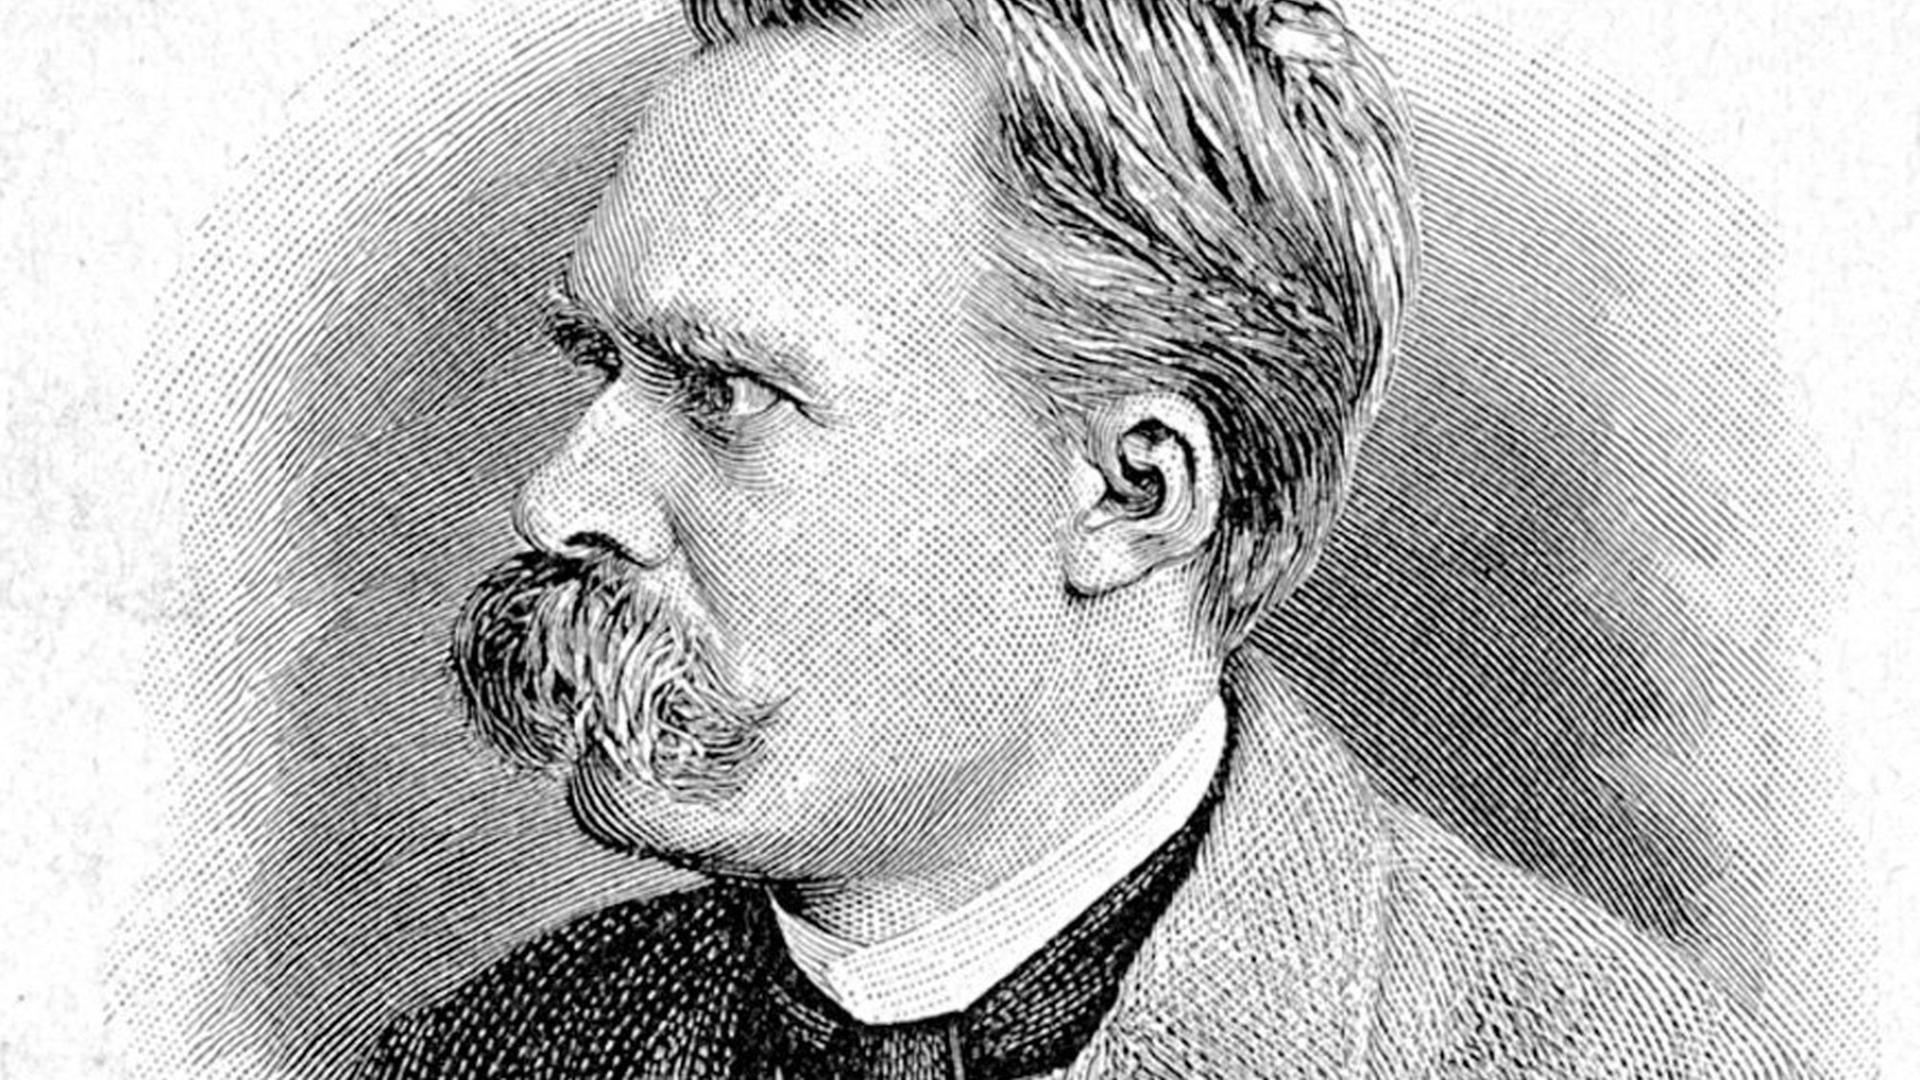 Zeitgenössisches Porträt des deutschen Philosophen Friedrich Nietzsche